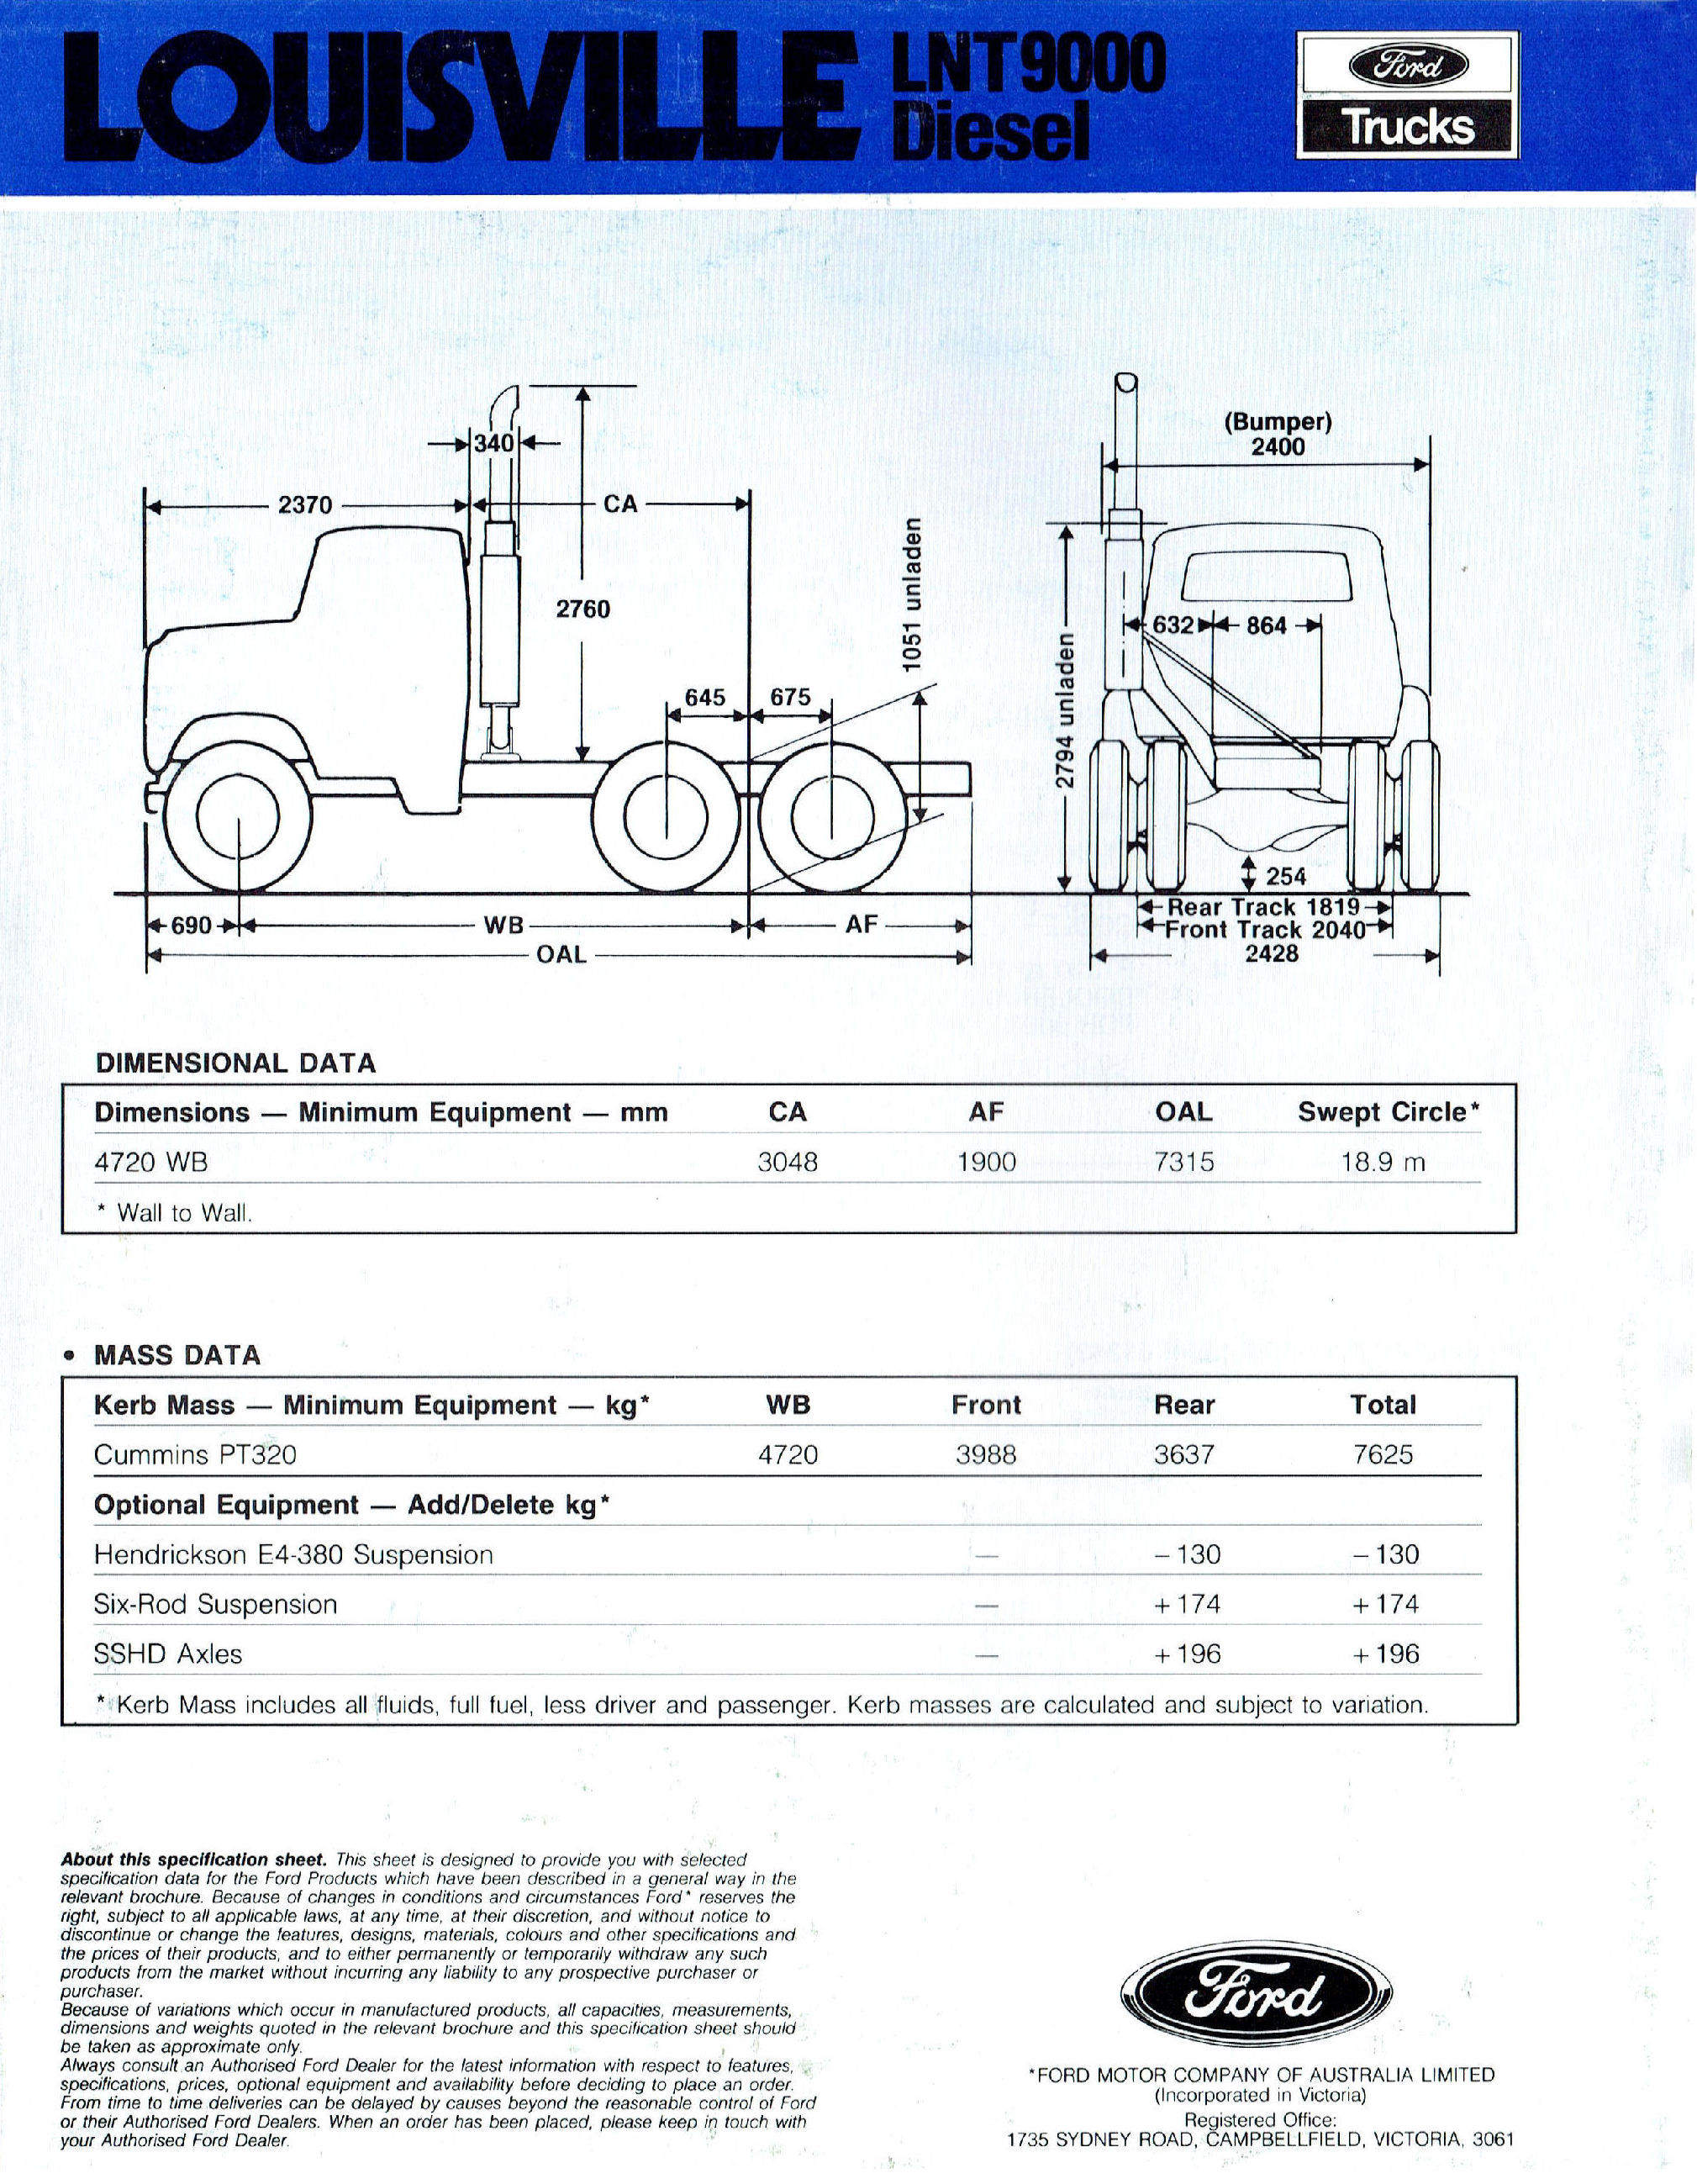 1987 Ford Louisville LNT 9000 Diesel (Aus)-04.jpg-2022-12-7 13.52.52